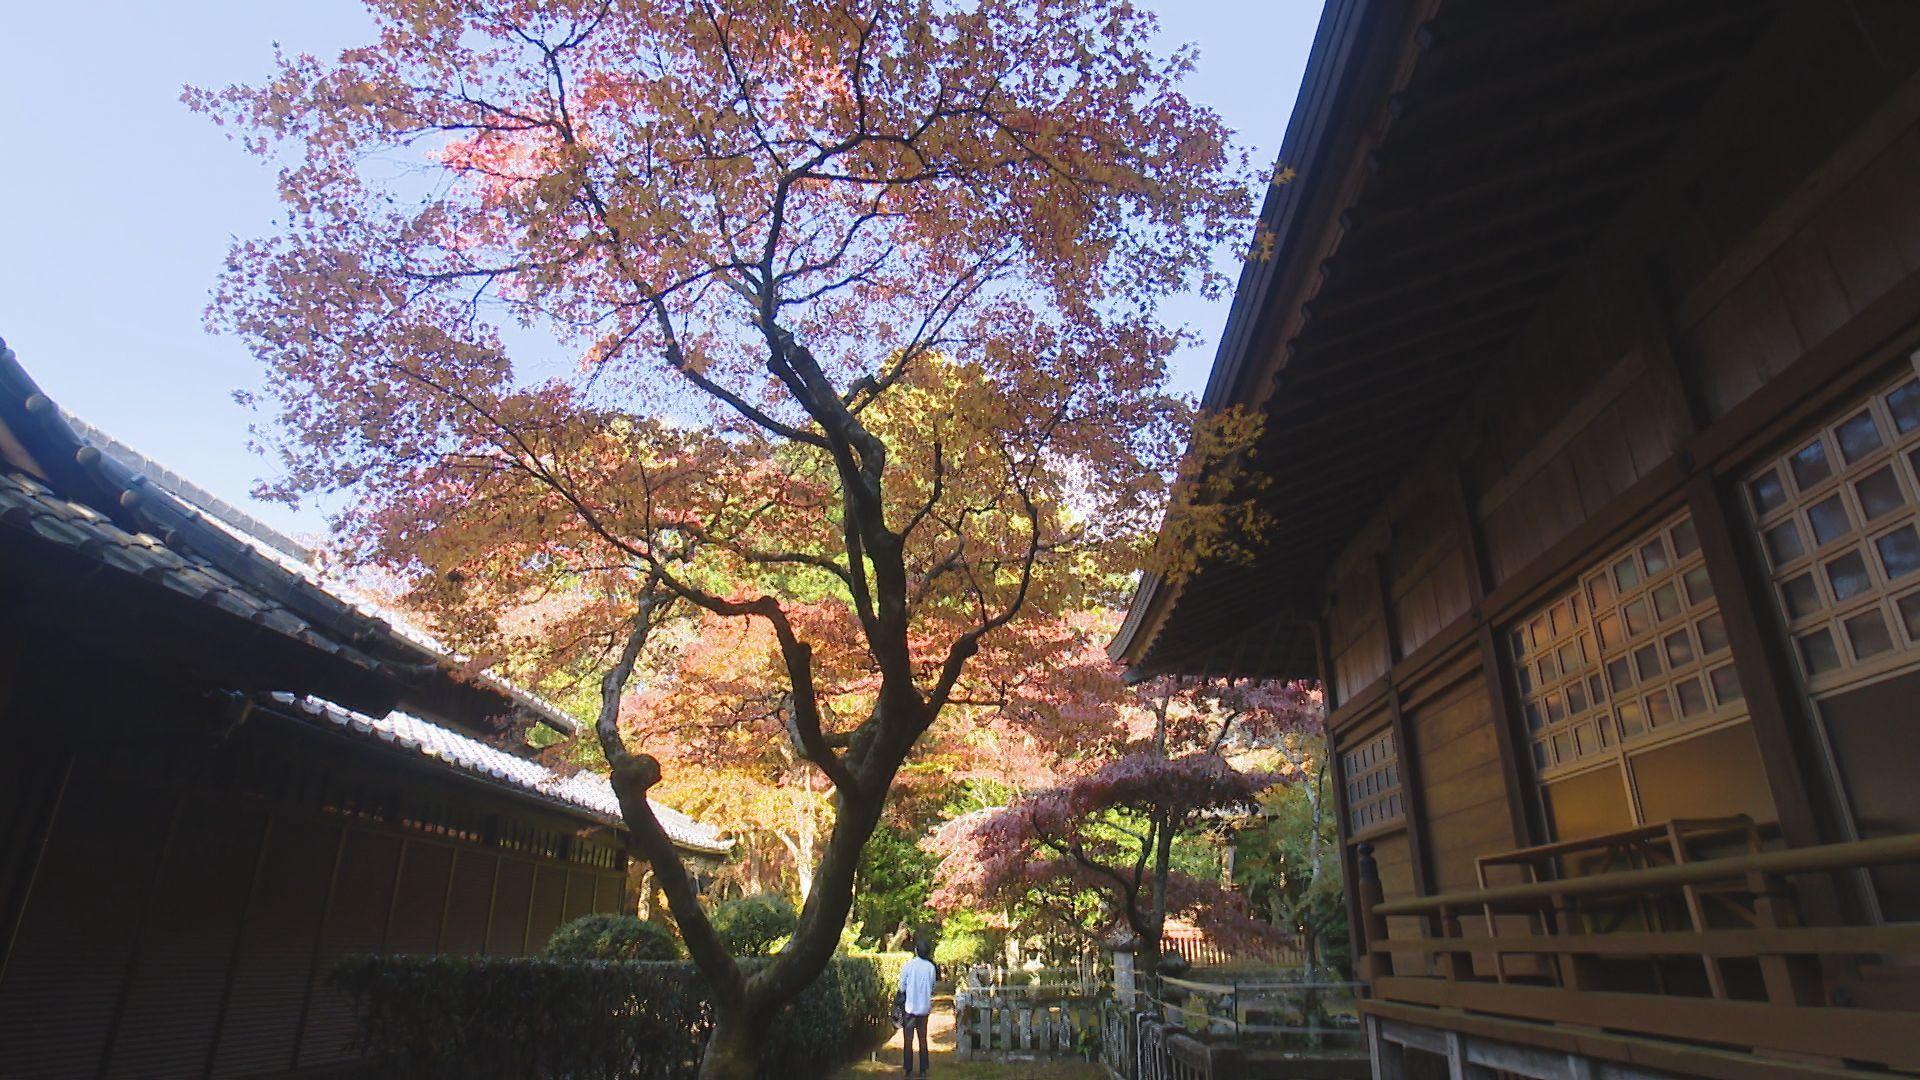 【長崎】金刀比羅神社の紅葉も見頃へ 櫻田気象予報士が訪ねて一句…